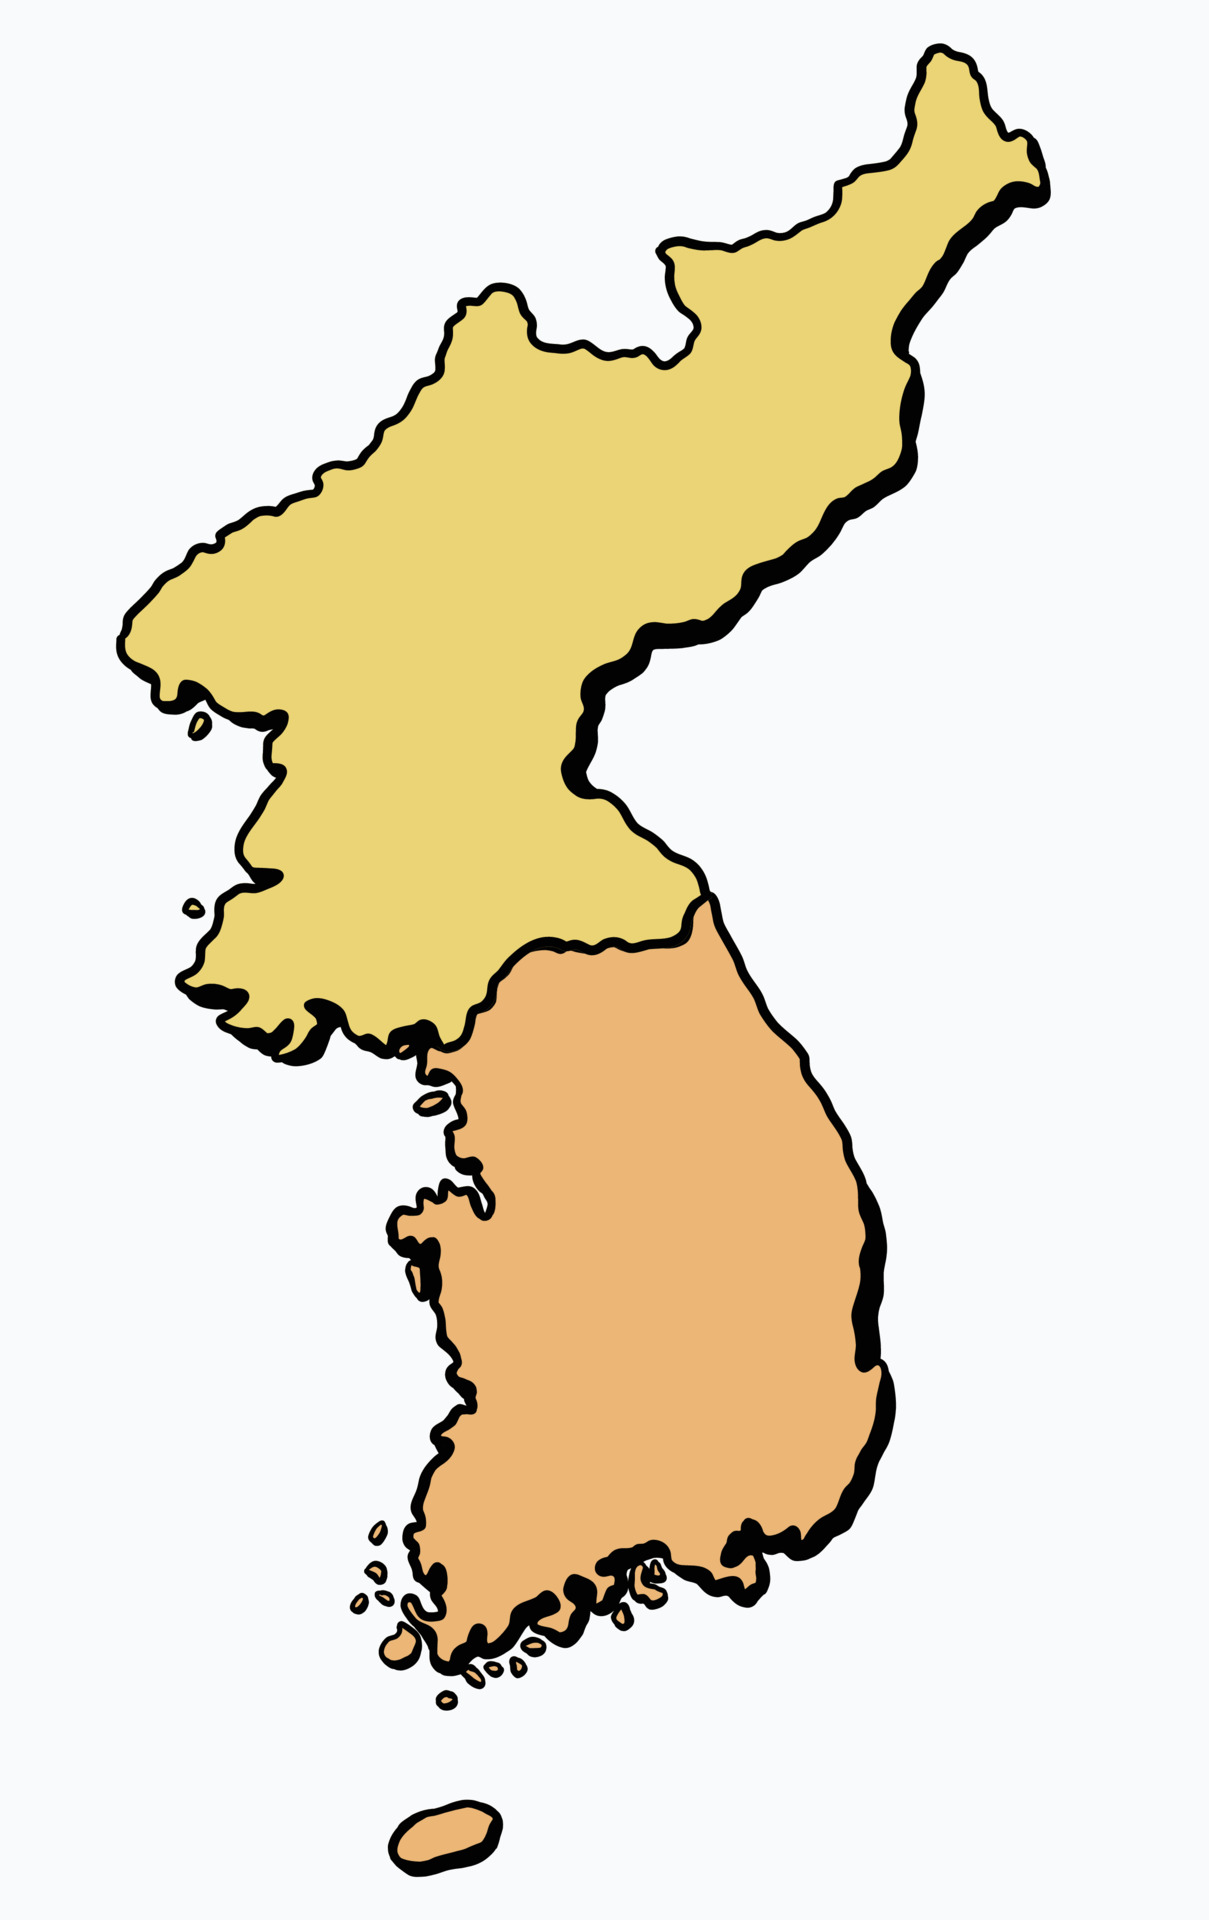 Korea map